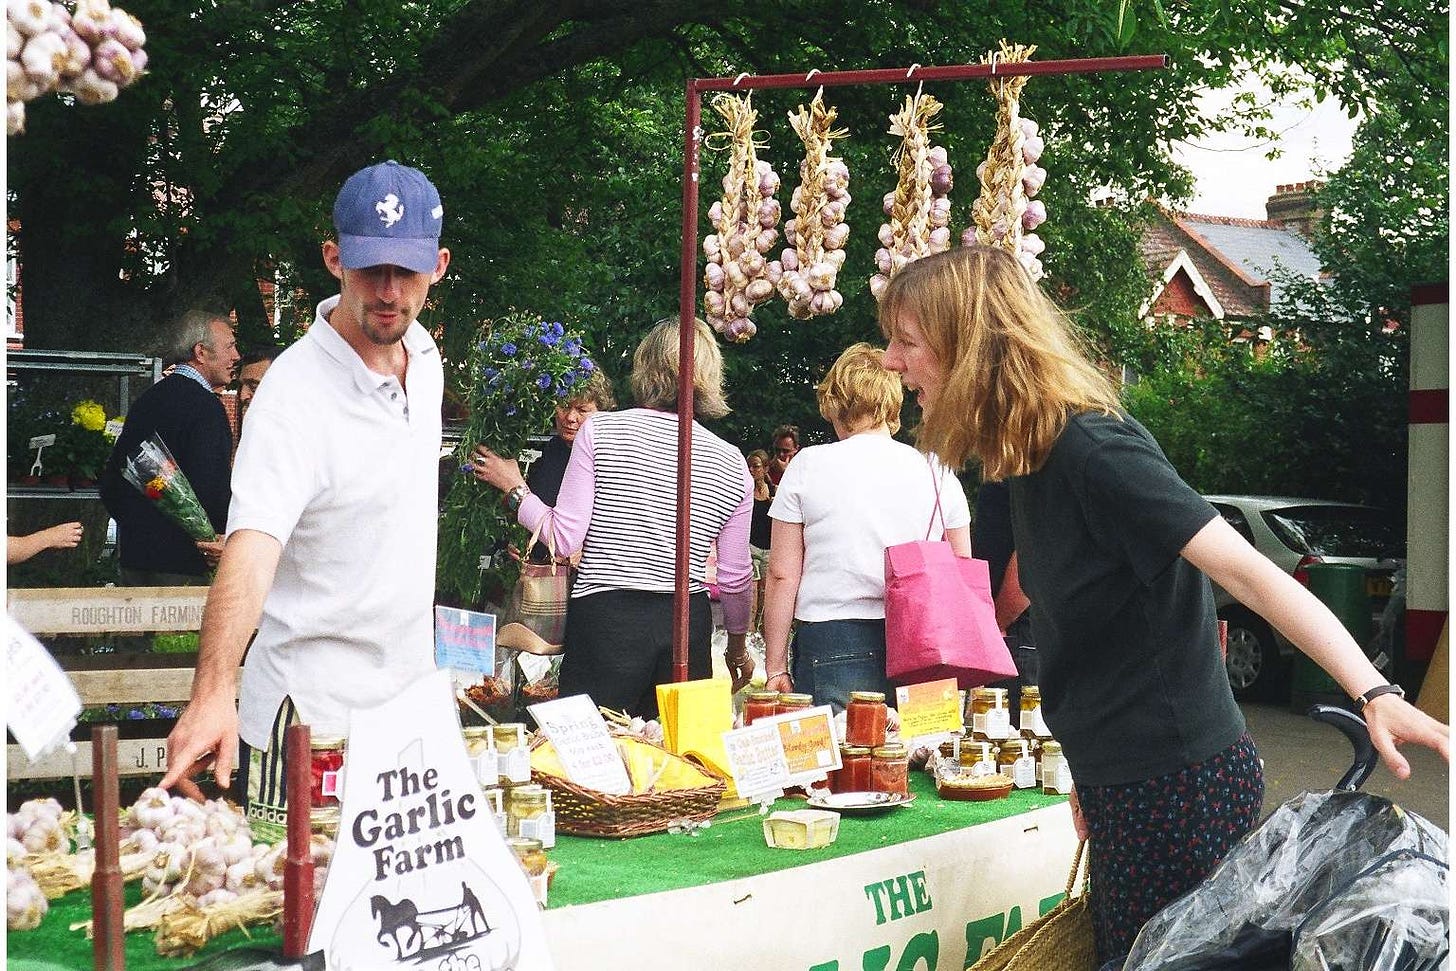 The Garlic farm and customer, Wimbledon farmers market 2001